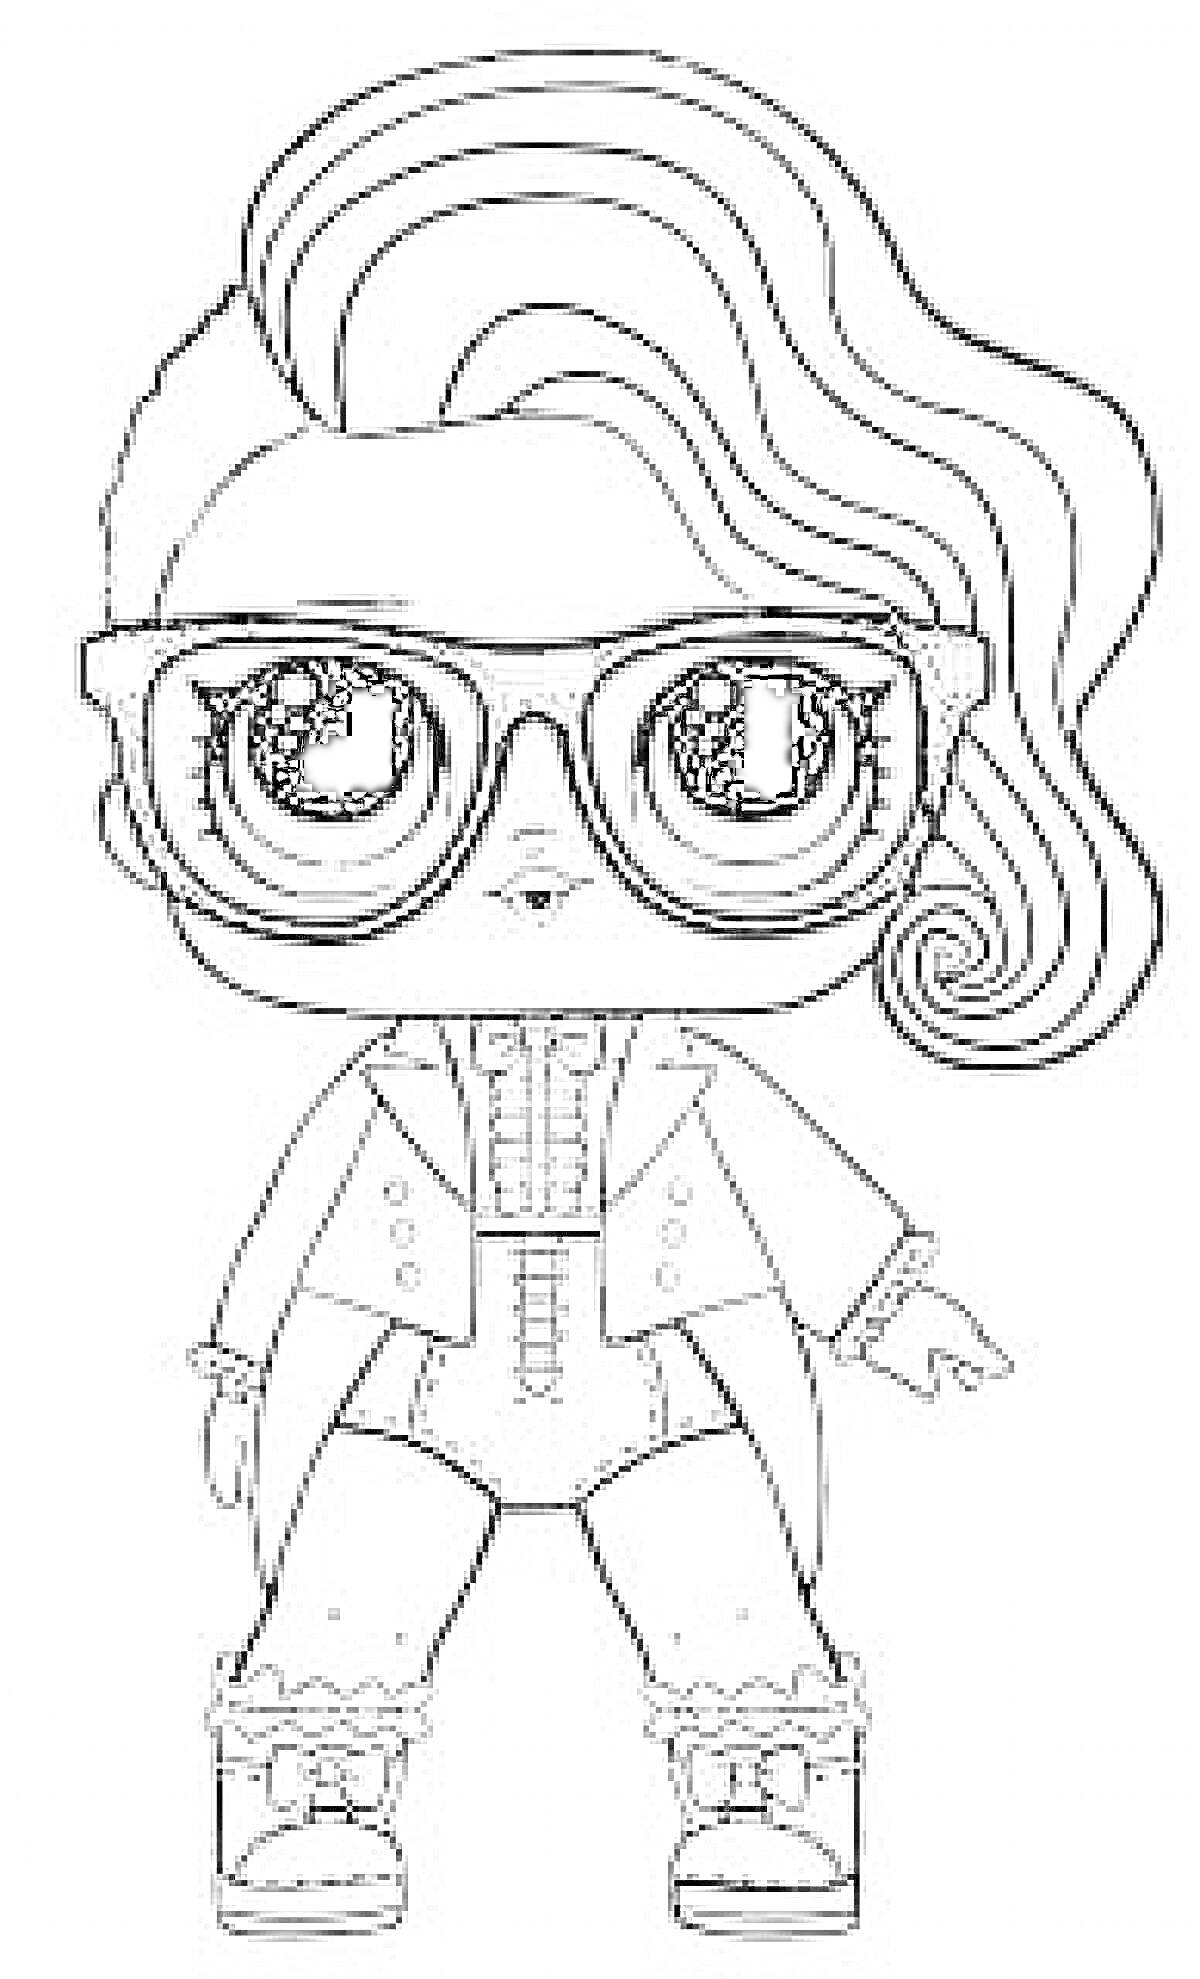 Раскраска Кукла Лол в очках с прической набок, в пальто, обуви с бантиками